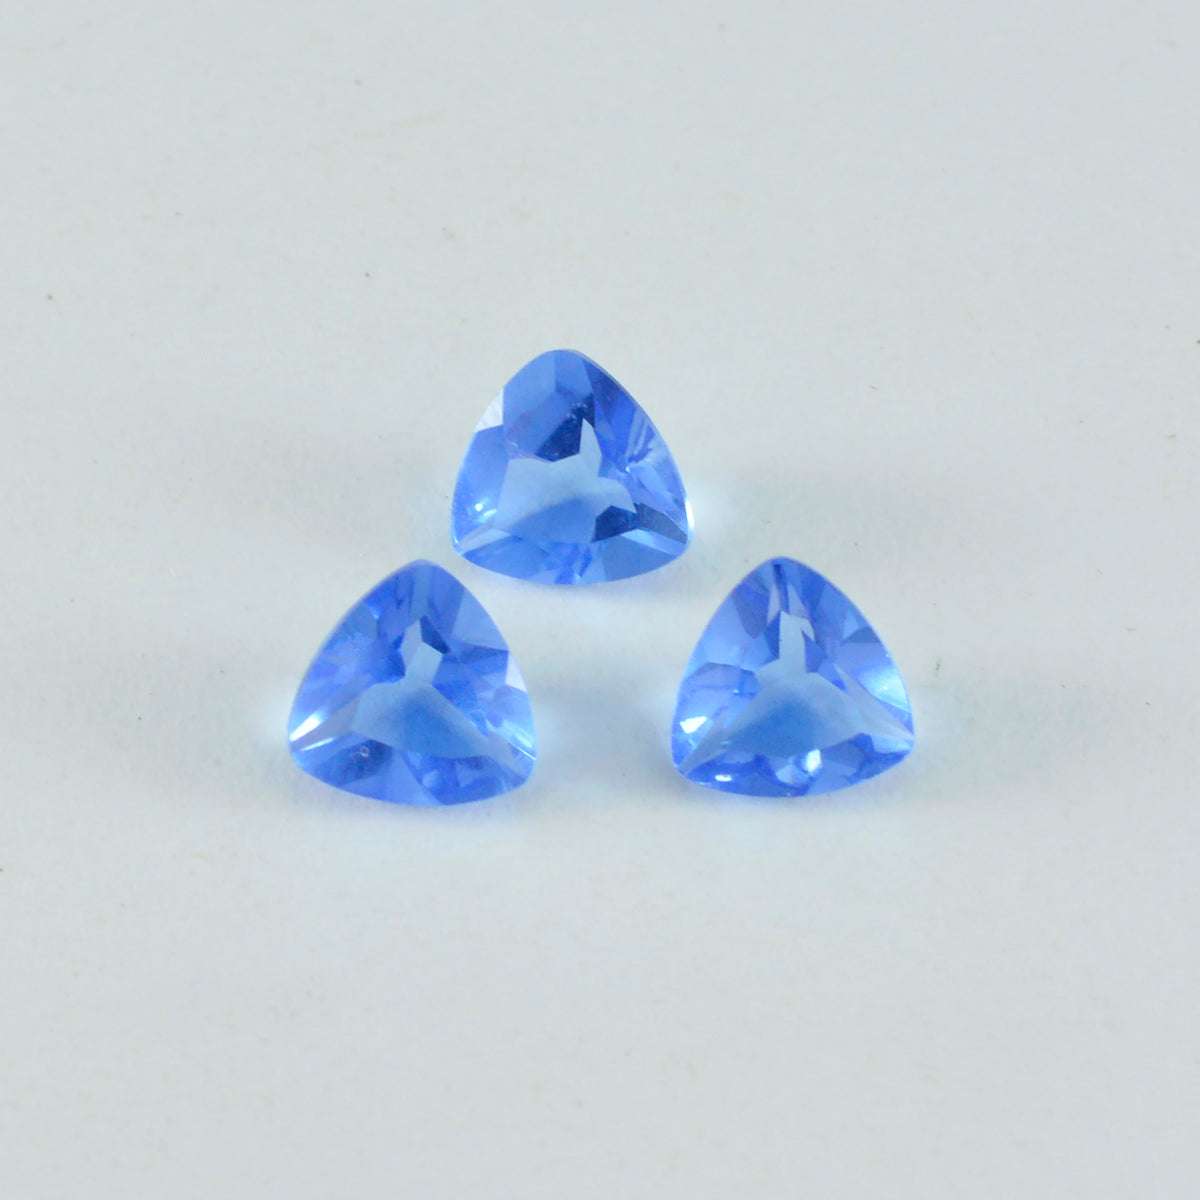 Riyogems 1PC Blue Sapphire CZ Faceted 10x10 mm Trillion Shape superb Quality Gems